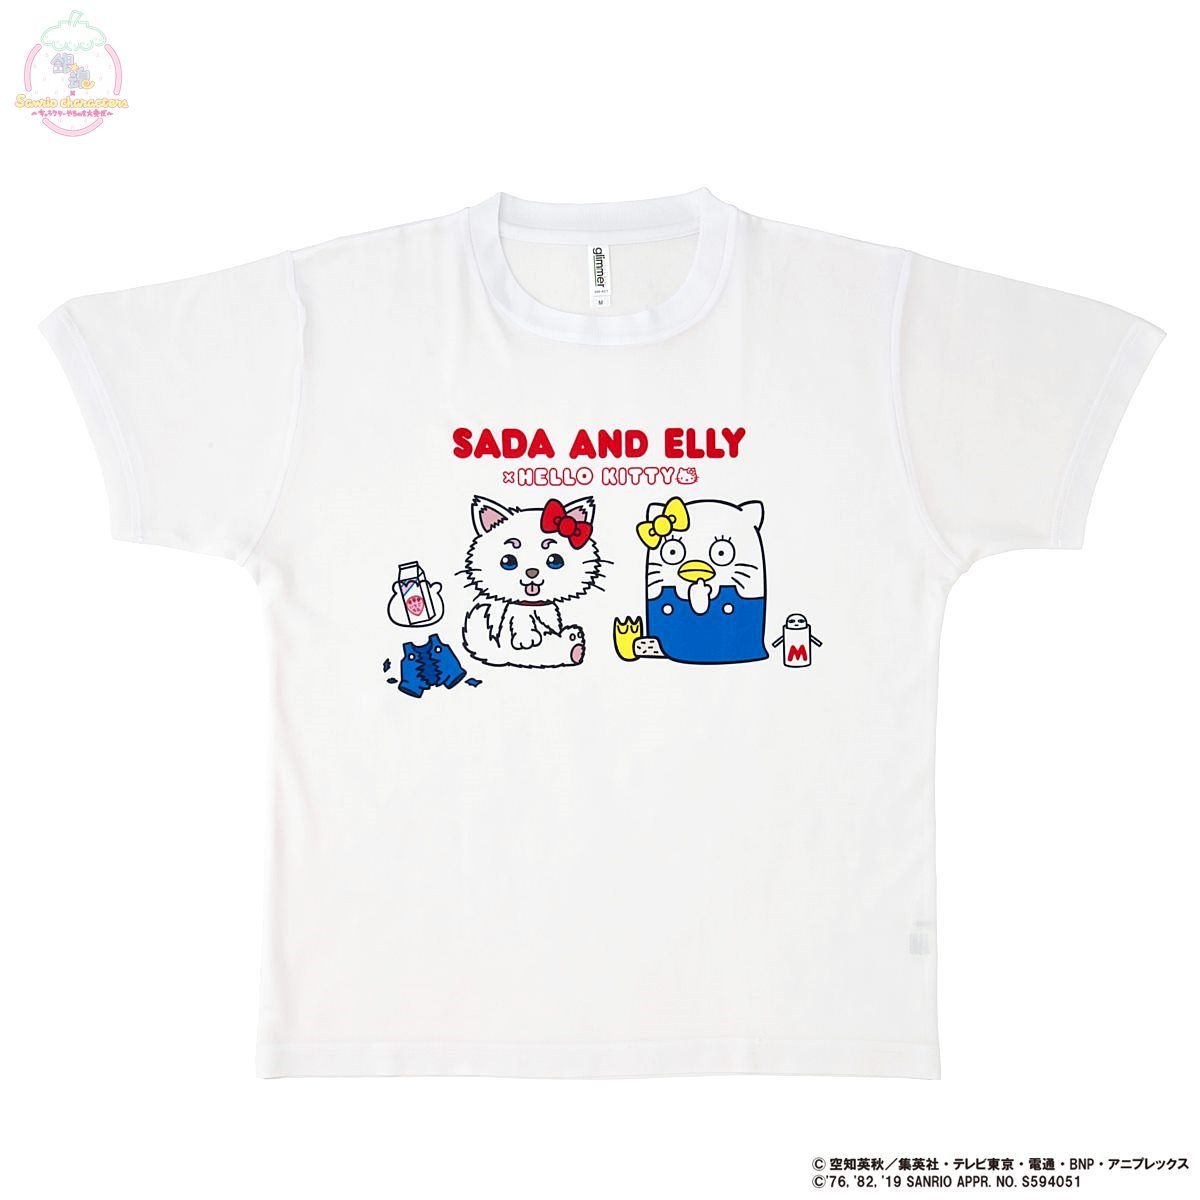 銀魂 Sanrio Characters フルカラーtシャツ サンリオ 趣味 コレクション バンダイナムコグループ公式通販サイト